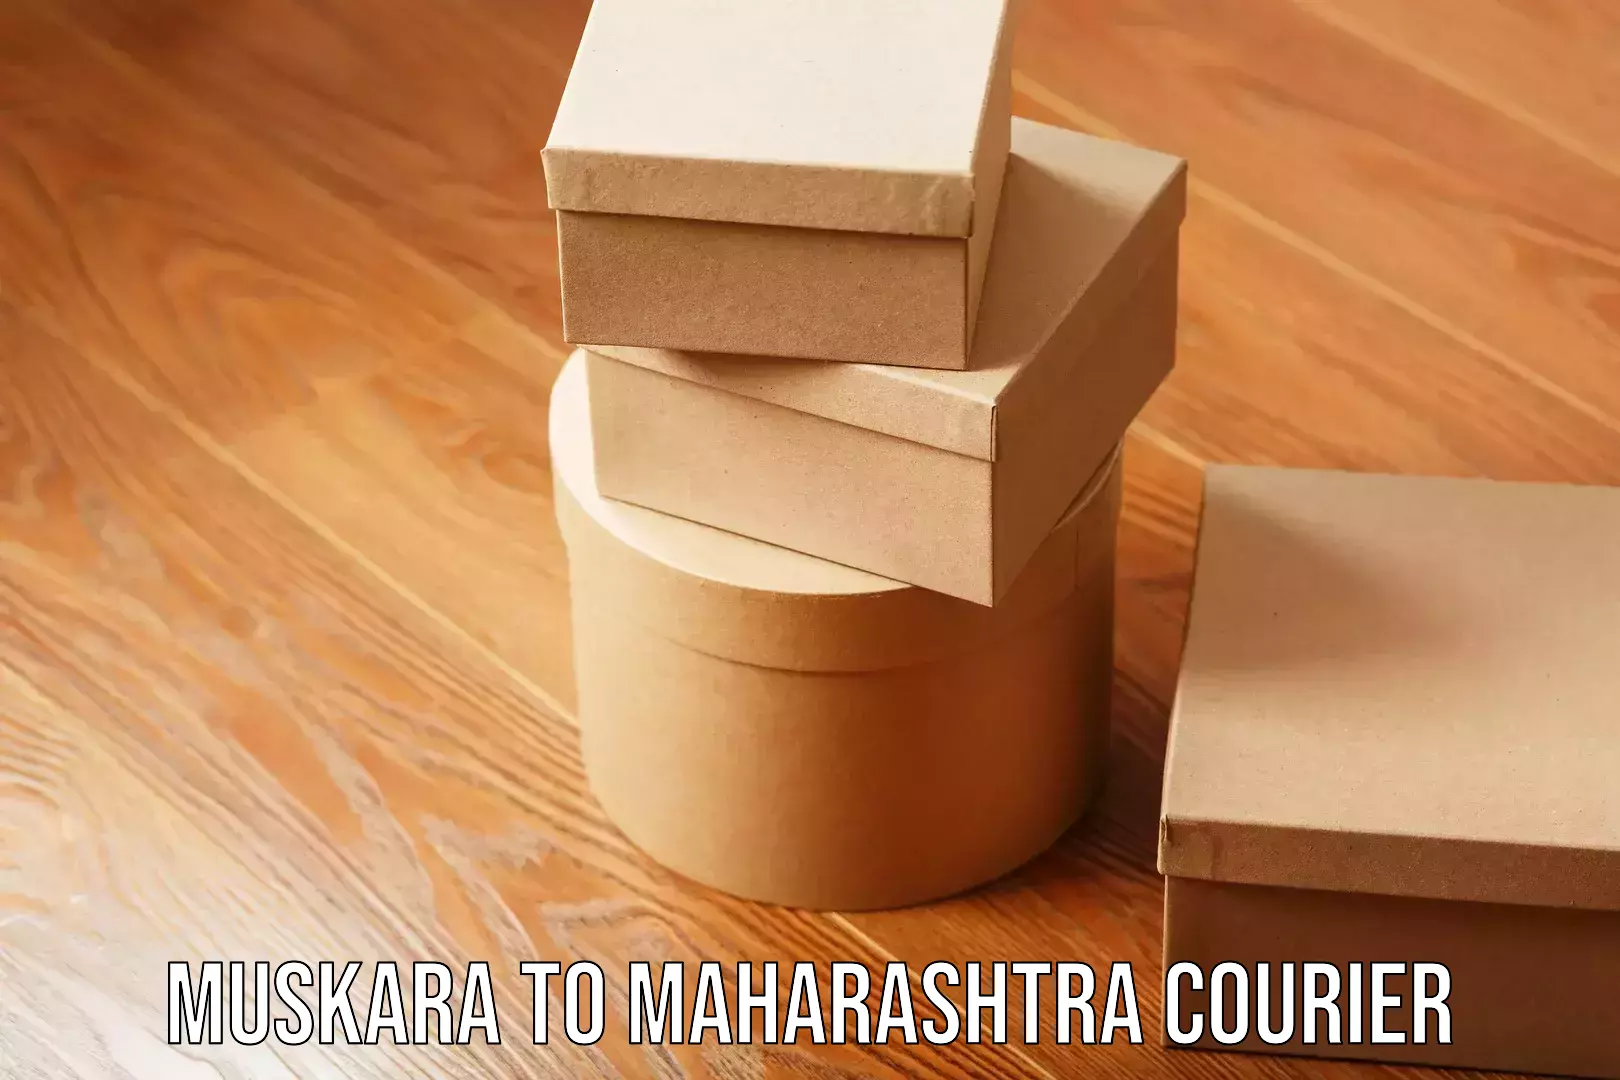 Budget-friendly movers Muskara to Maharashtra